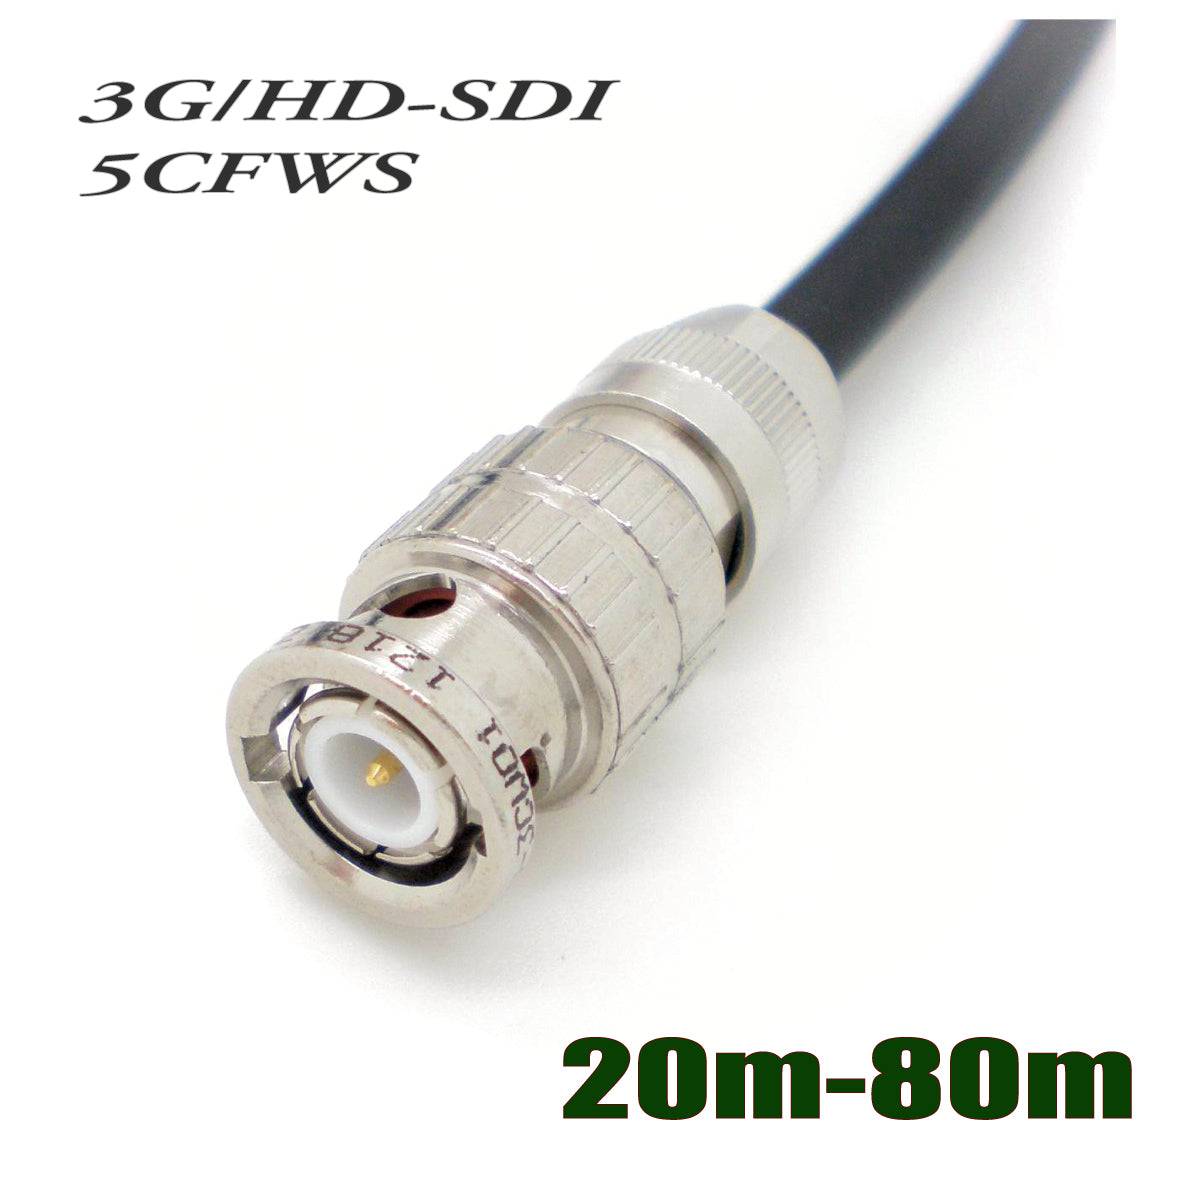 可動用3G HD-SDI対応BNCケーブル 5CFWSタイプ 30m - オーディオケーブル